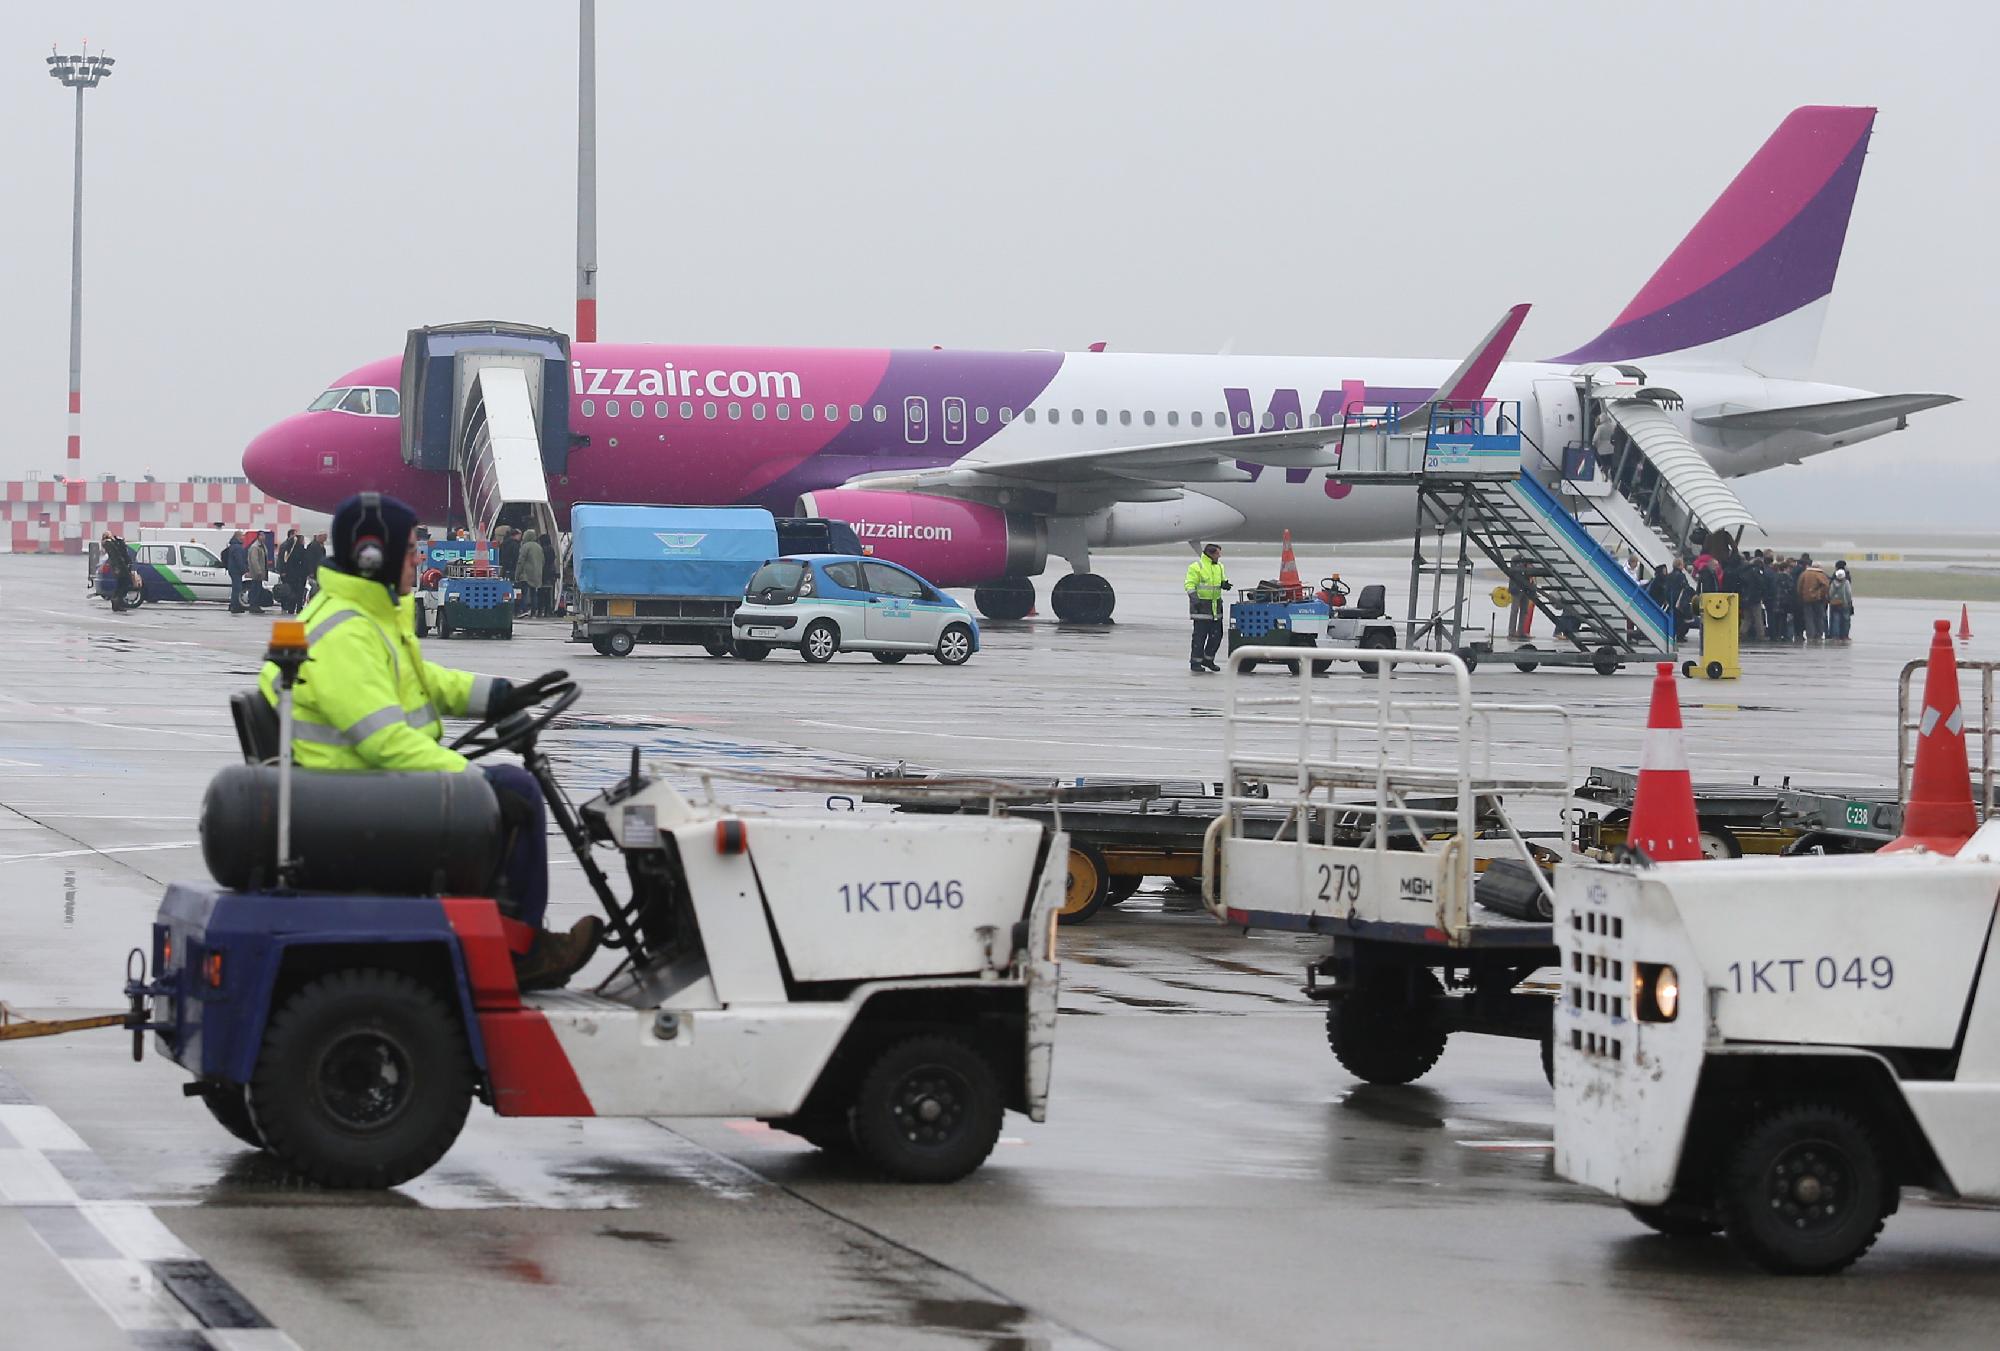 Koronavírus: A Wizz Air törli Budapest és Oslo közötti járatait